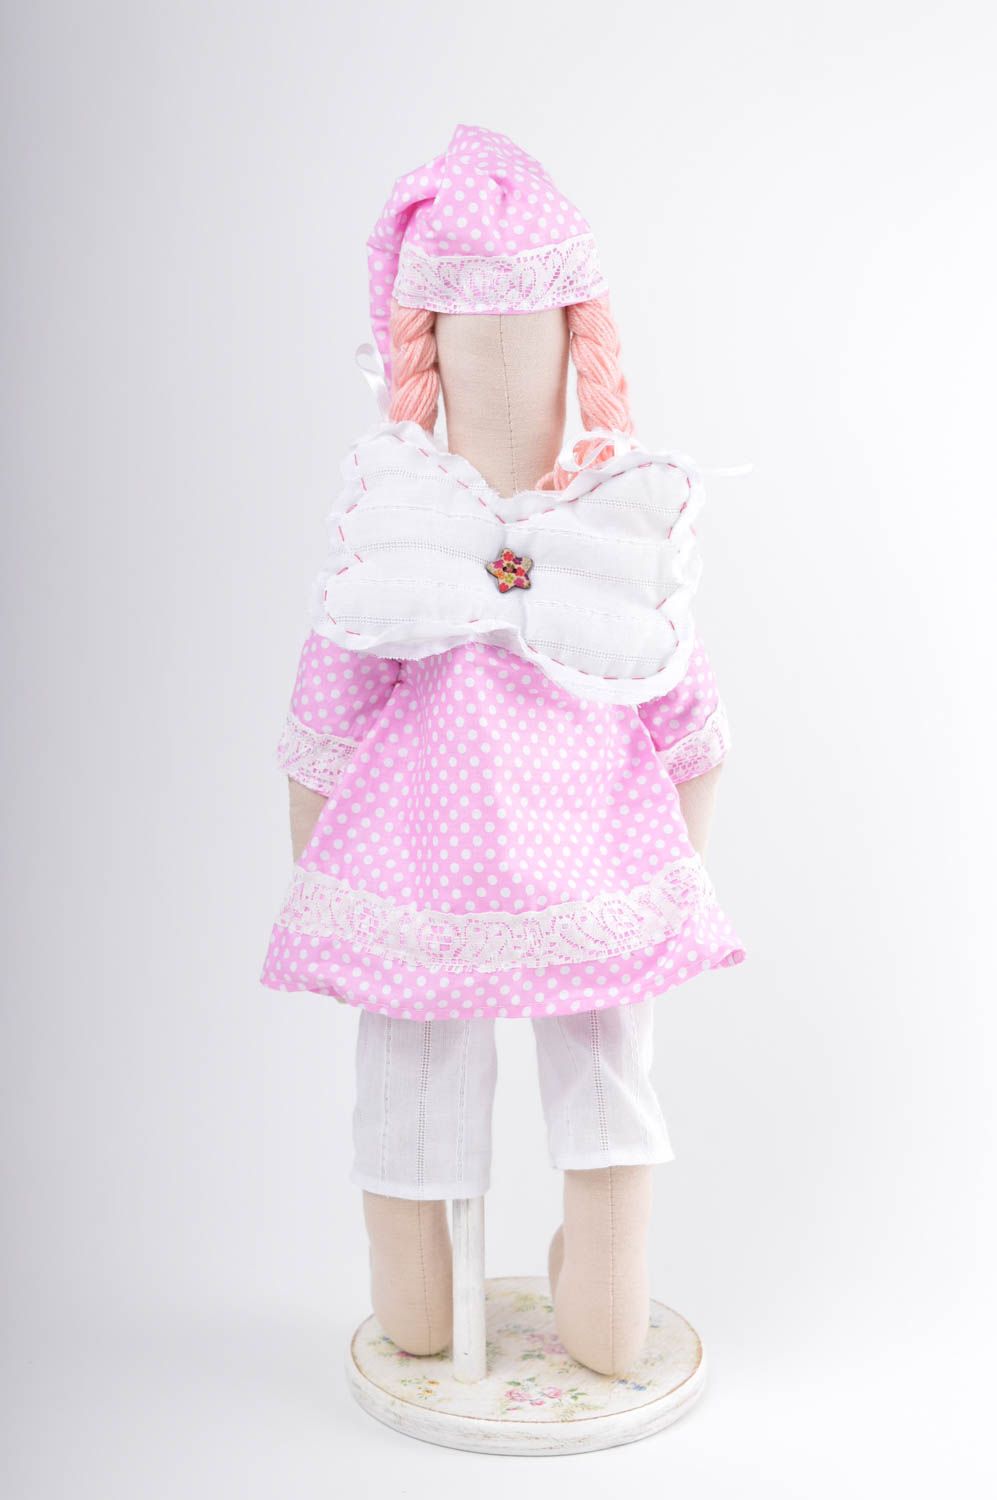 Игрушка ангел ручной работы детская игрушка льняная мягкая игрушка розовая фото 3